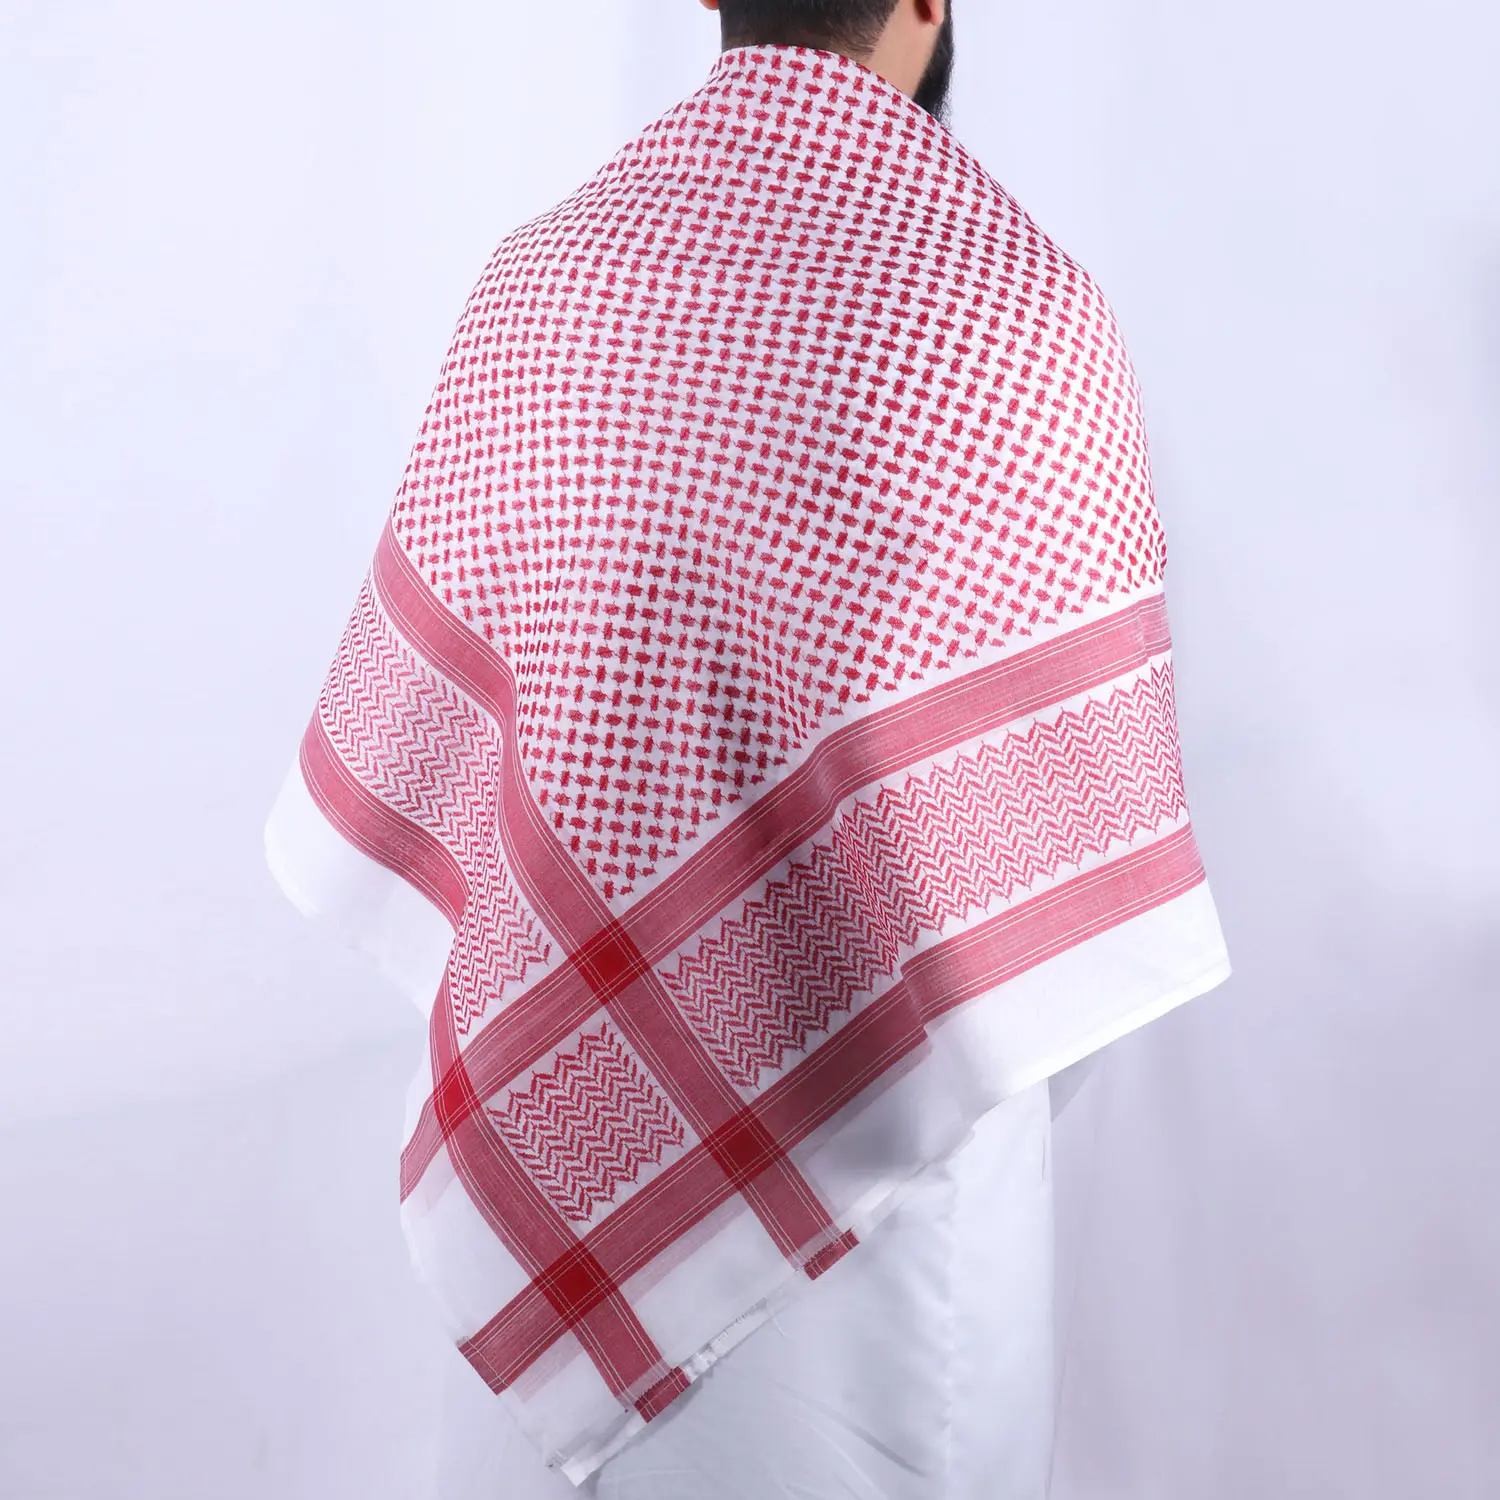 Erwachsene Saudi Palästina Keffiyeh Red Shemagh Arab Premium Wrap Muslim Kopf bedeckung Kopftuch für Männer